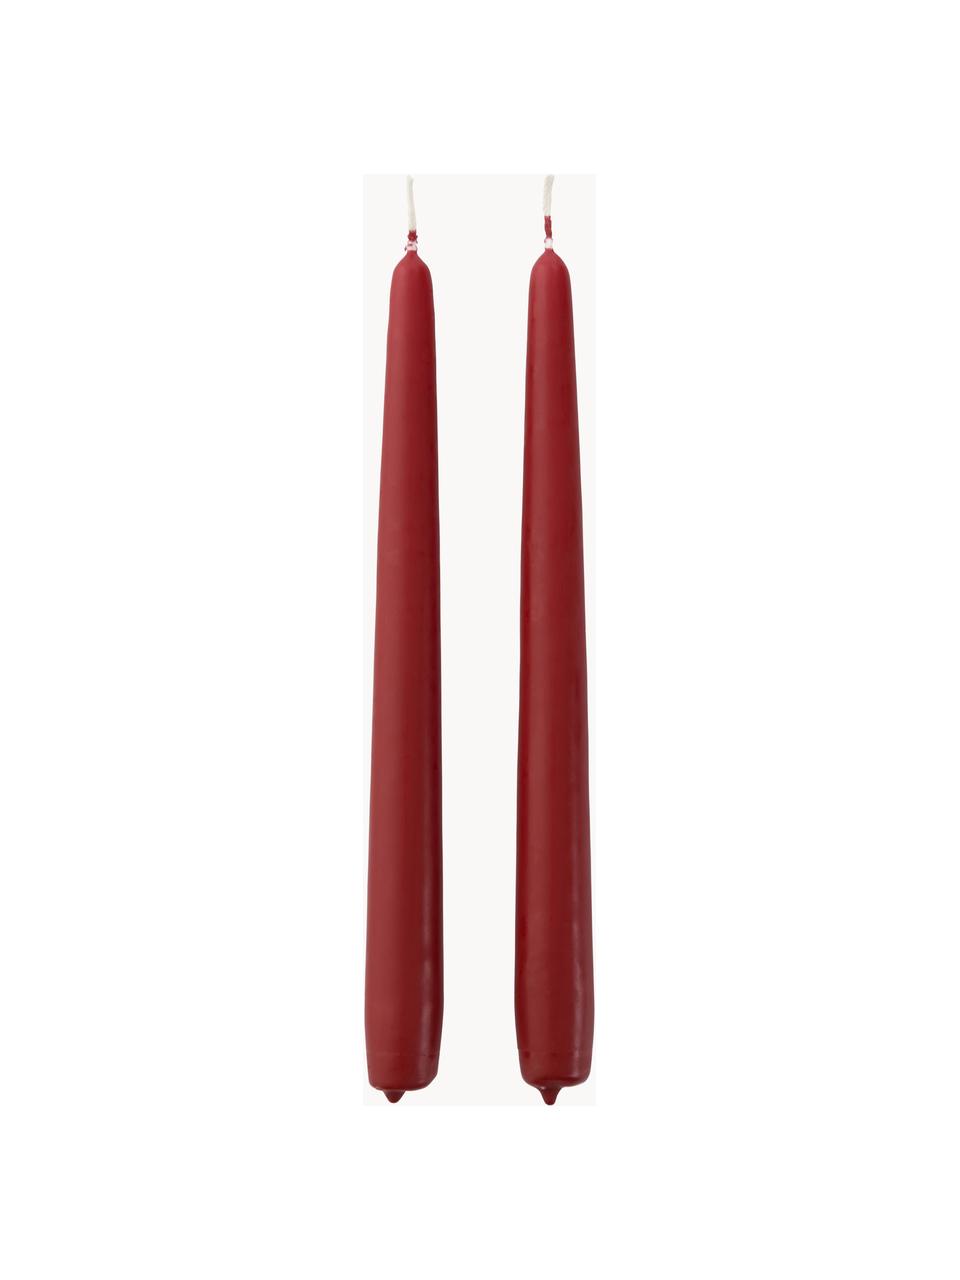 Stolní svíčky Madeon, 2 ks, 40 % stearin, 60 % parafín, Vínově červená, V 25 cm